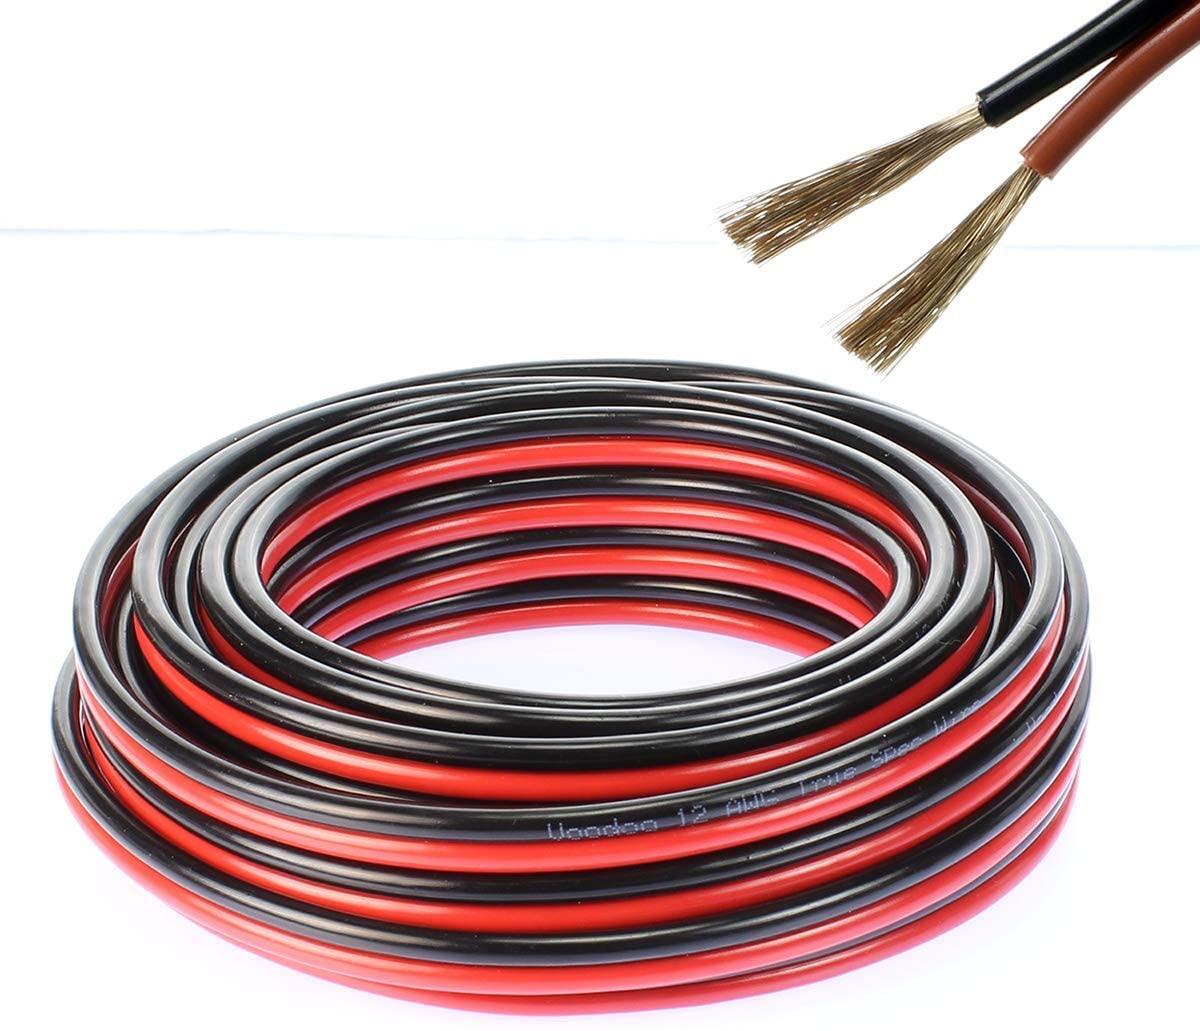 สายไฟ แดงดำ 17awg (1 mm²) สายลำโพง สายไฟคู่ สายคู่ electrical wire cable เครื่องเสียง รถยนต์ car aud สี ชุด 100 เมตร สี ชุด 100 เมตร